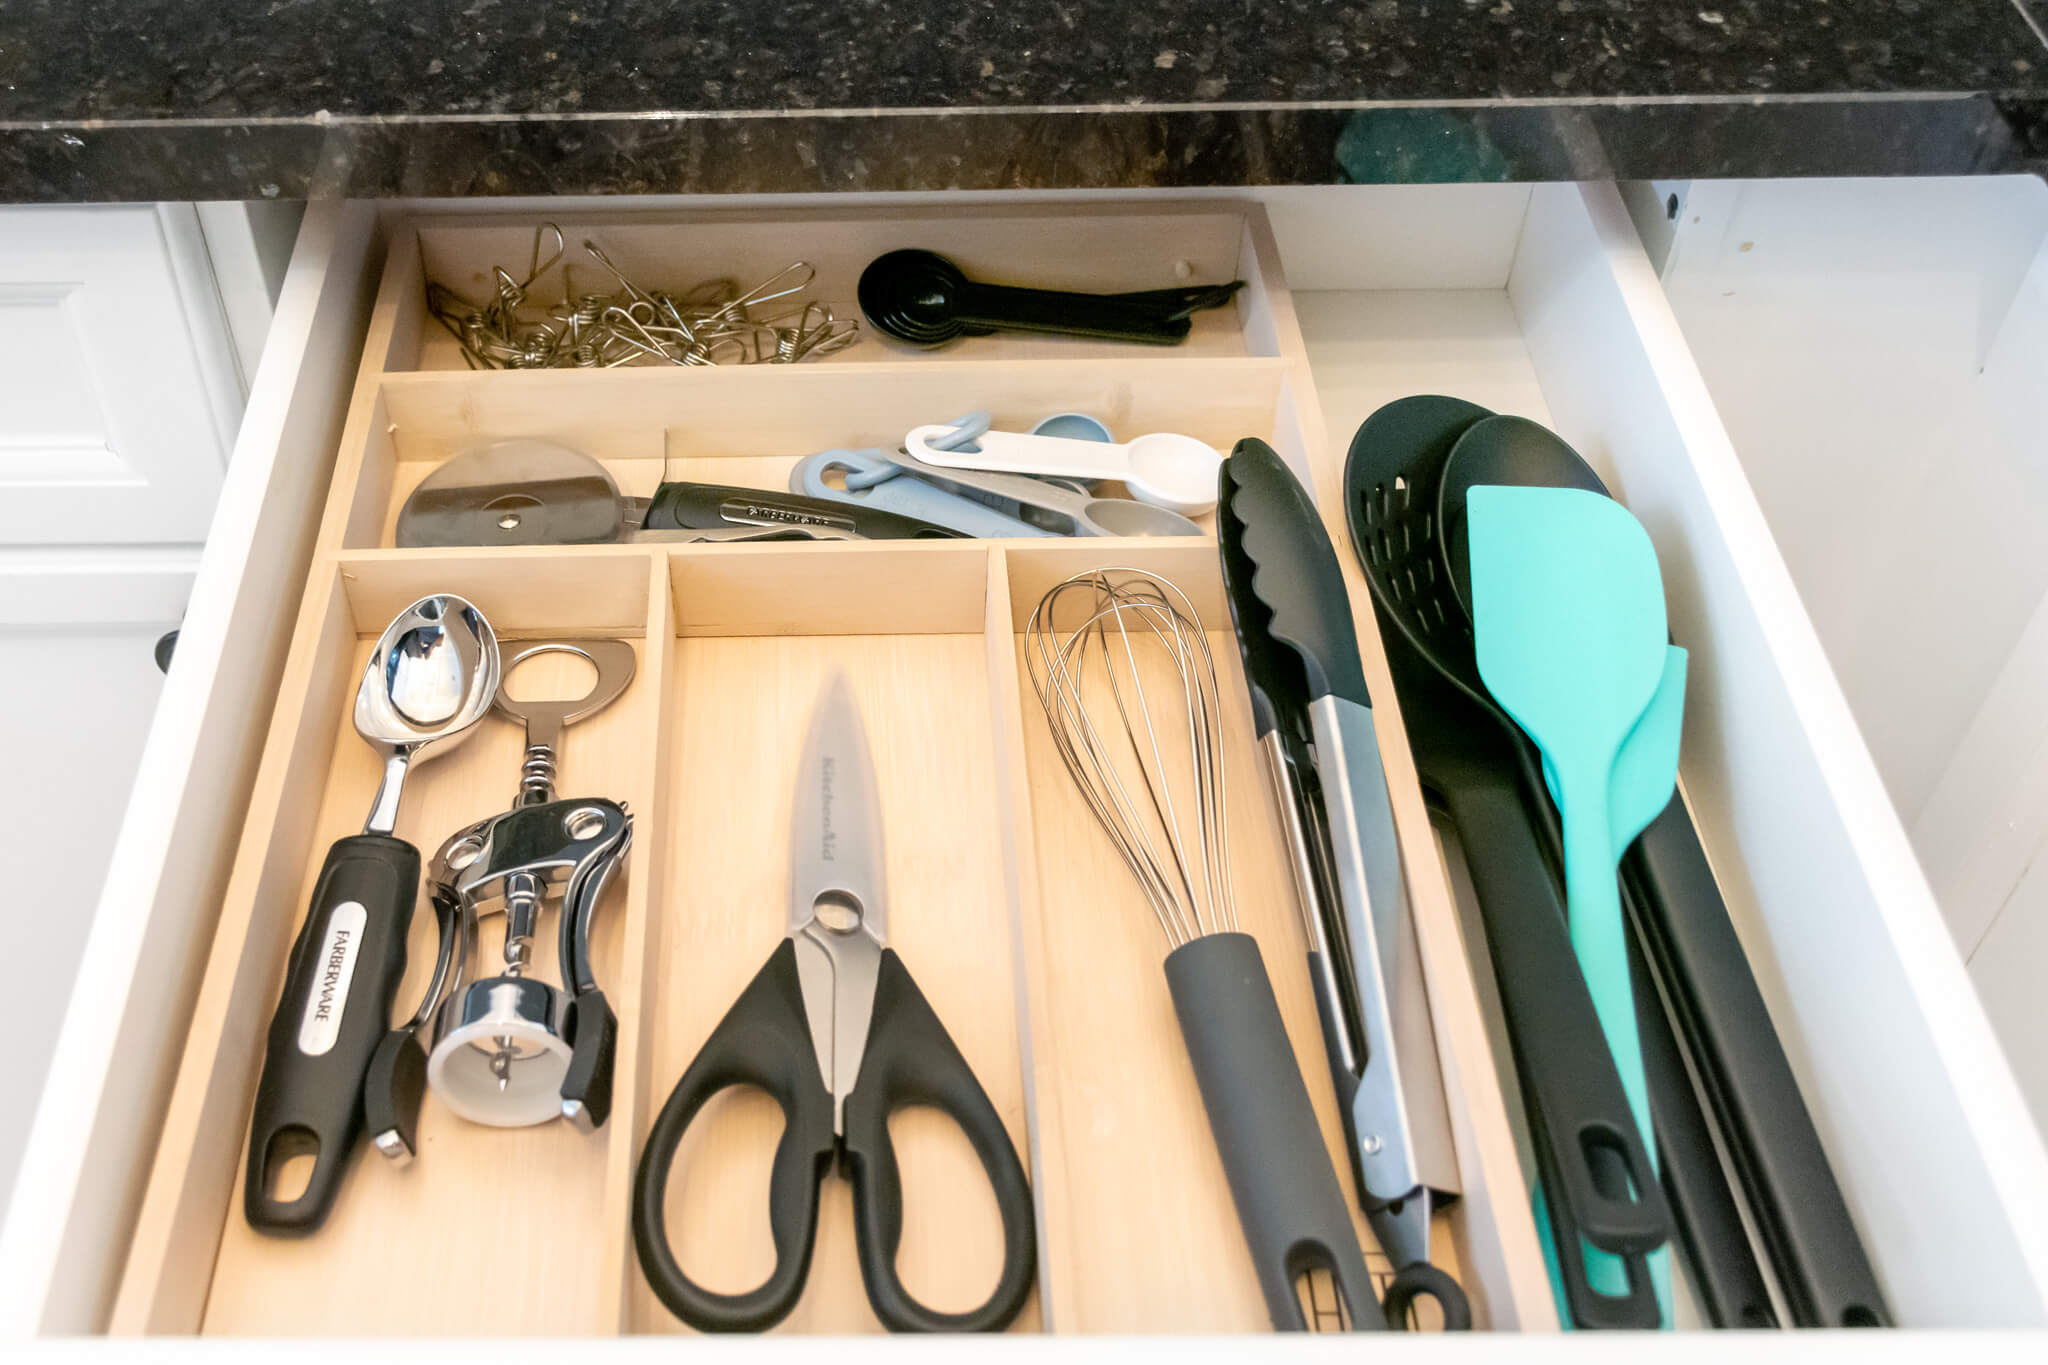 Airbnb Kitchen Checklist